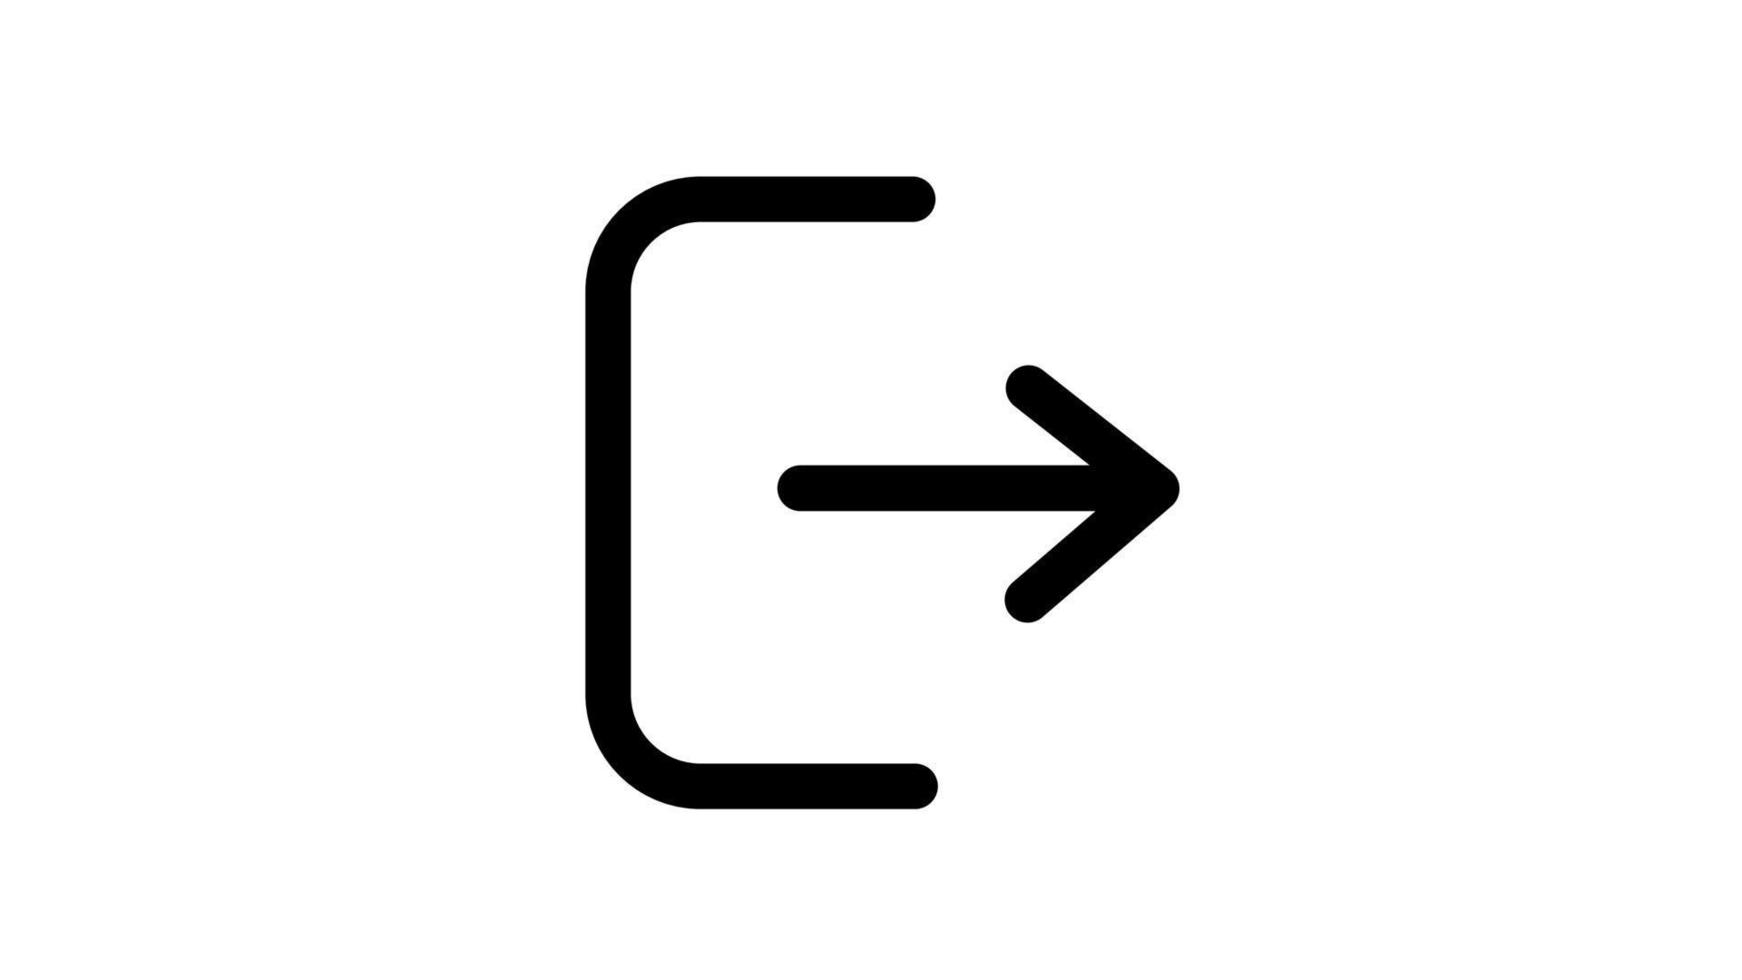 icona del vettore di disconnessione. esci dal vettore in stile piatto alla moda. icona mobile web piatta, segno, simbolo, pulsante, elemento - illustrazione vettoriale.